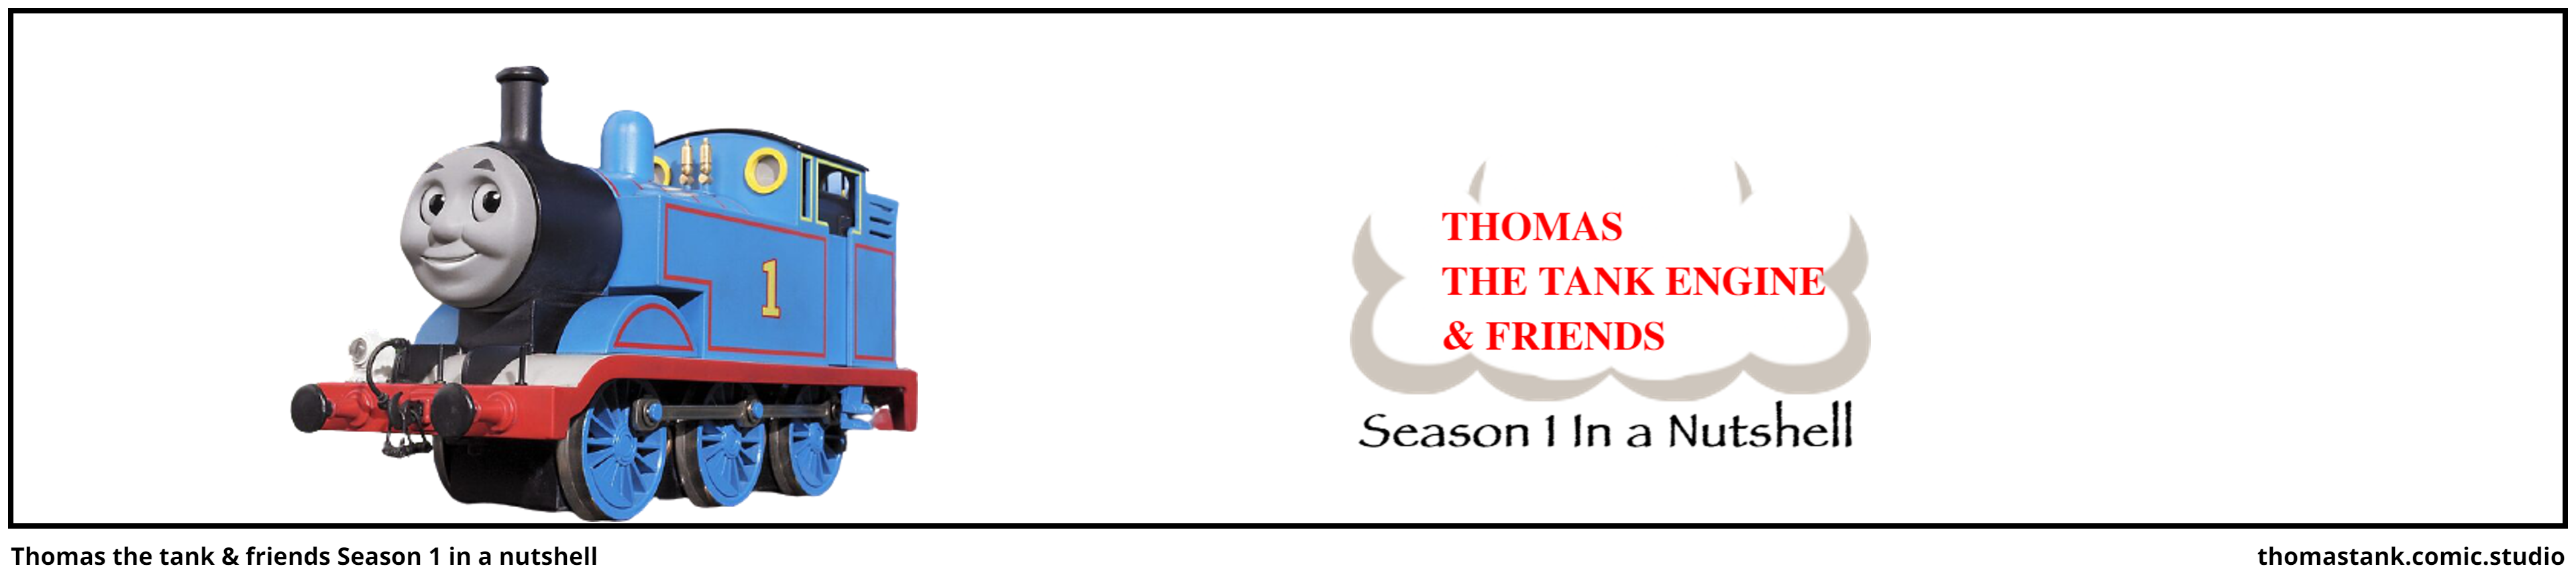 Thomas the tank & friends Season 1 in a nutshell